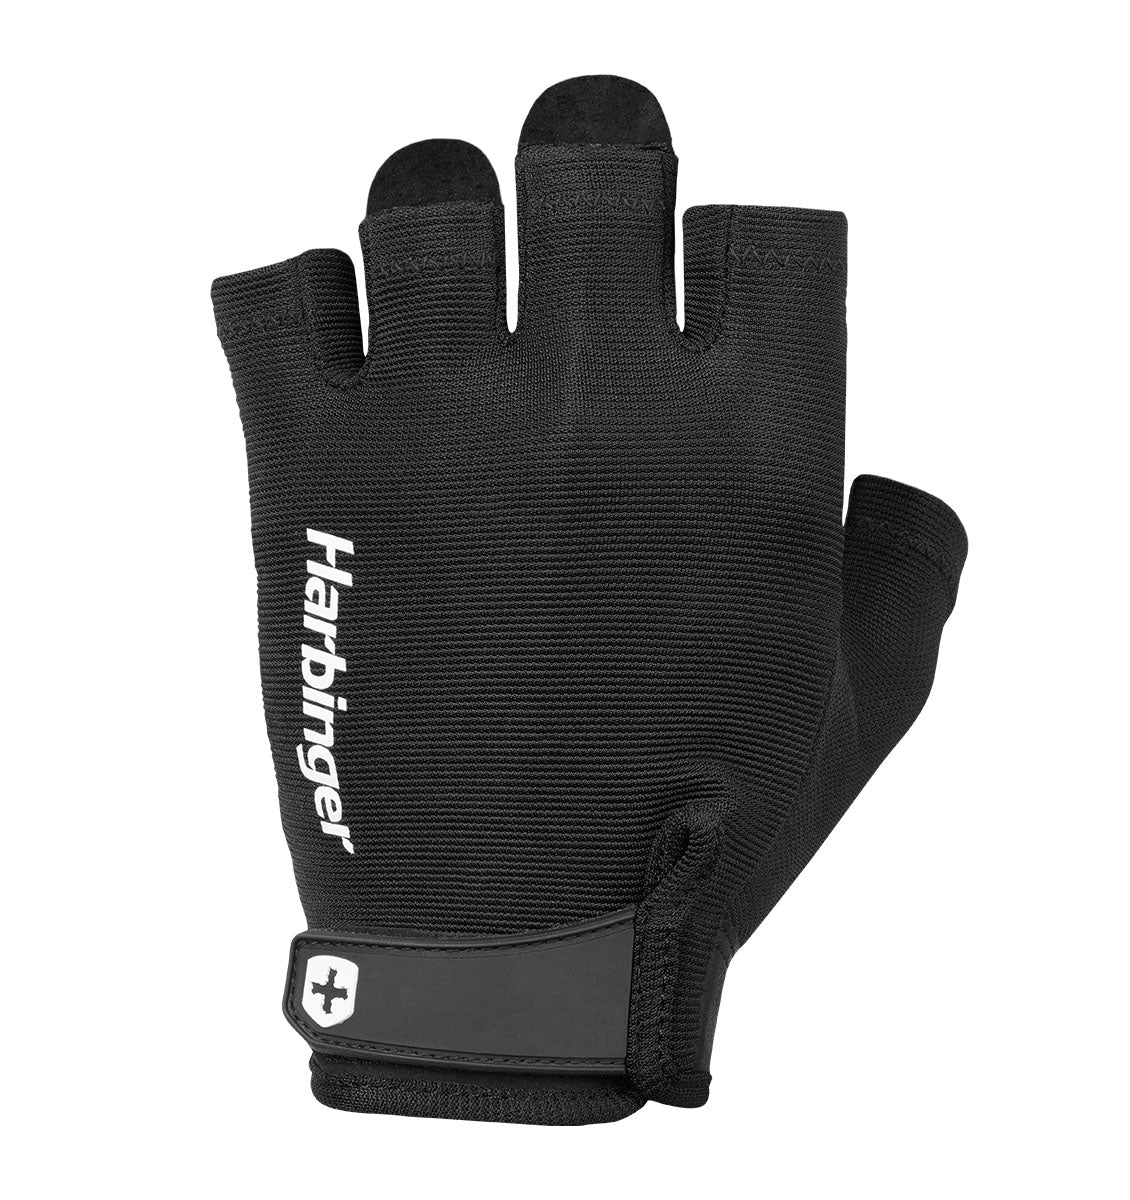 Harbinger Power Gloves 2.0 - Unisex - Black - 2